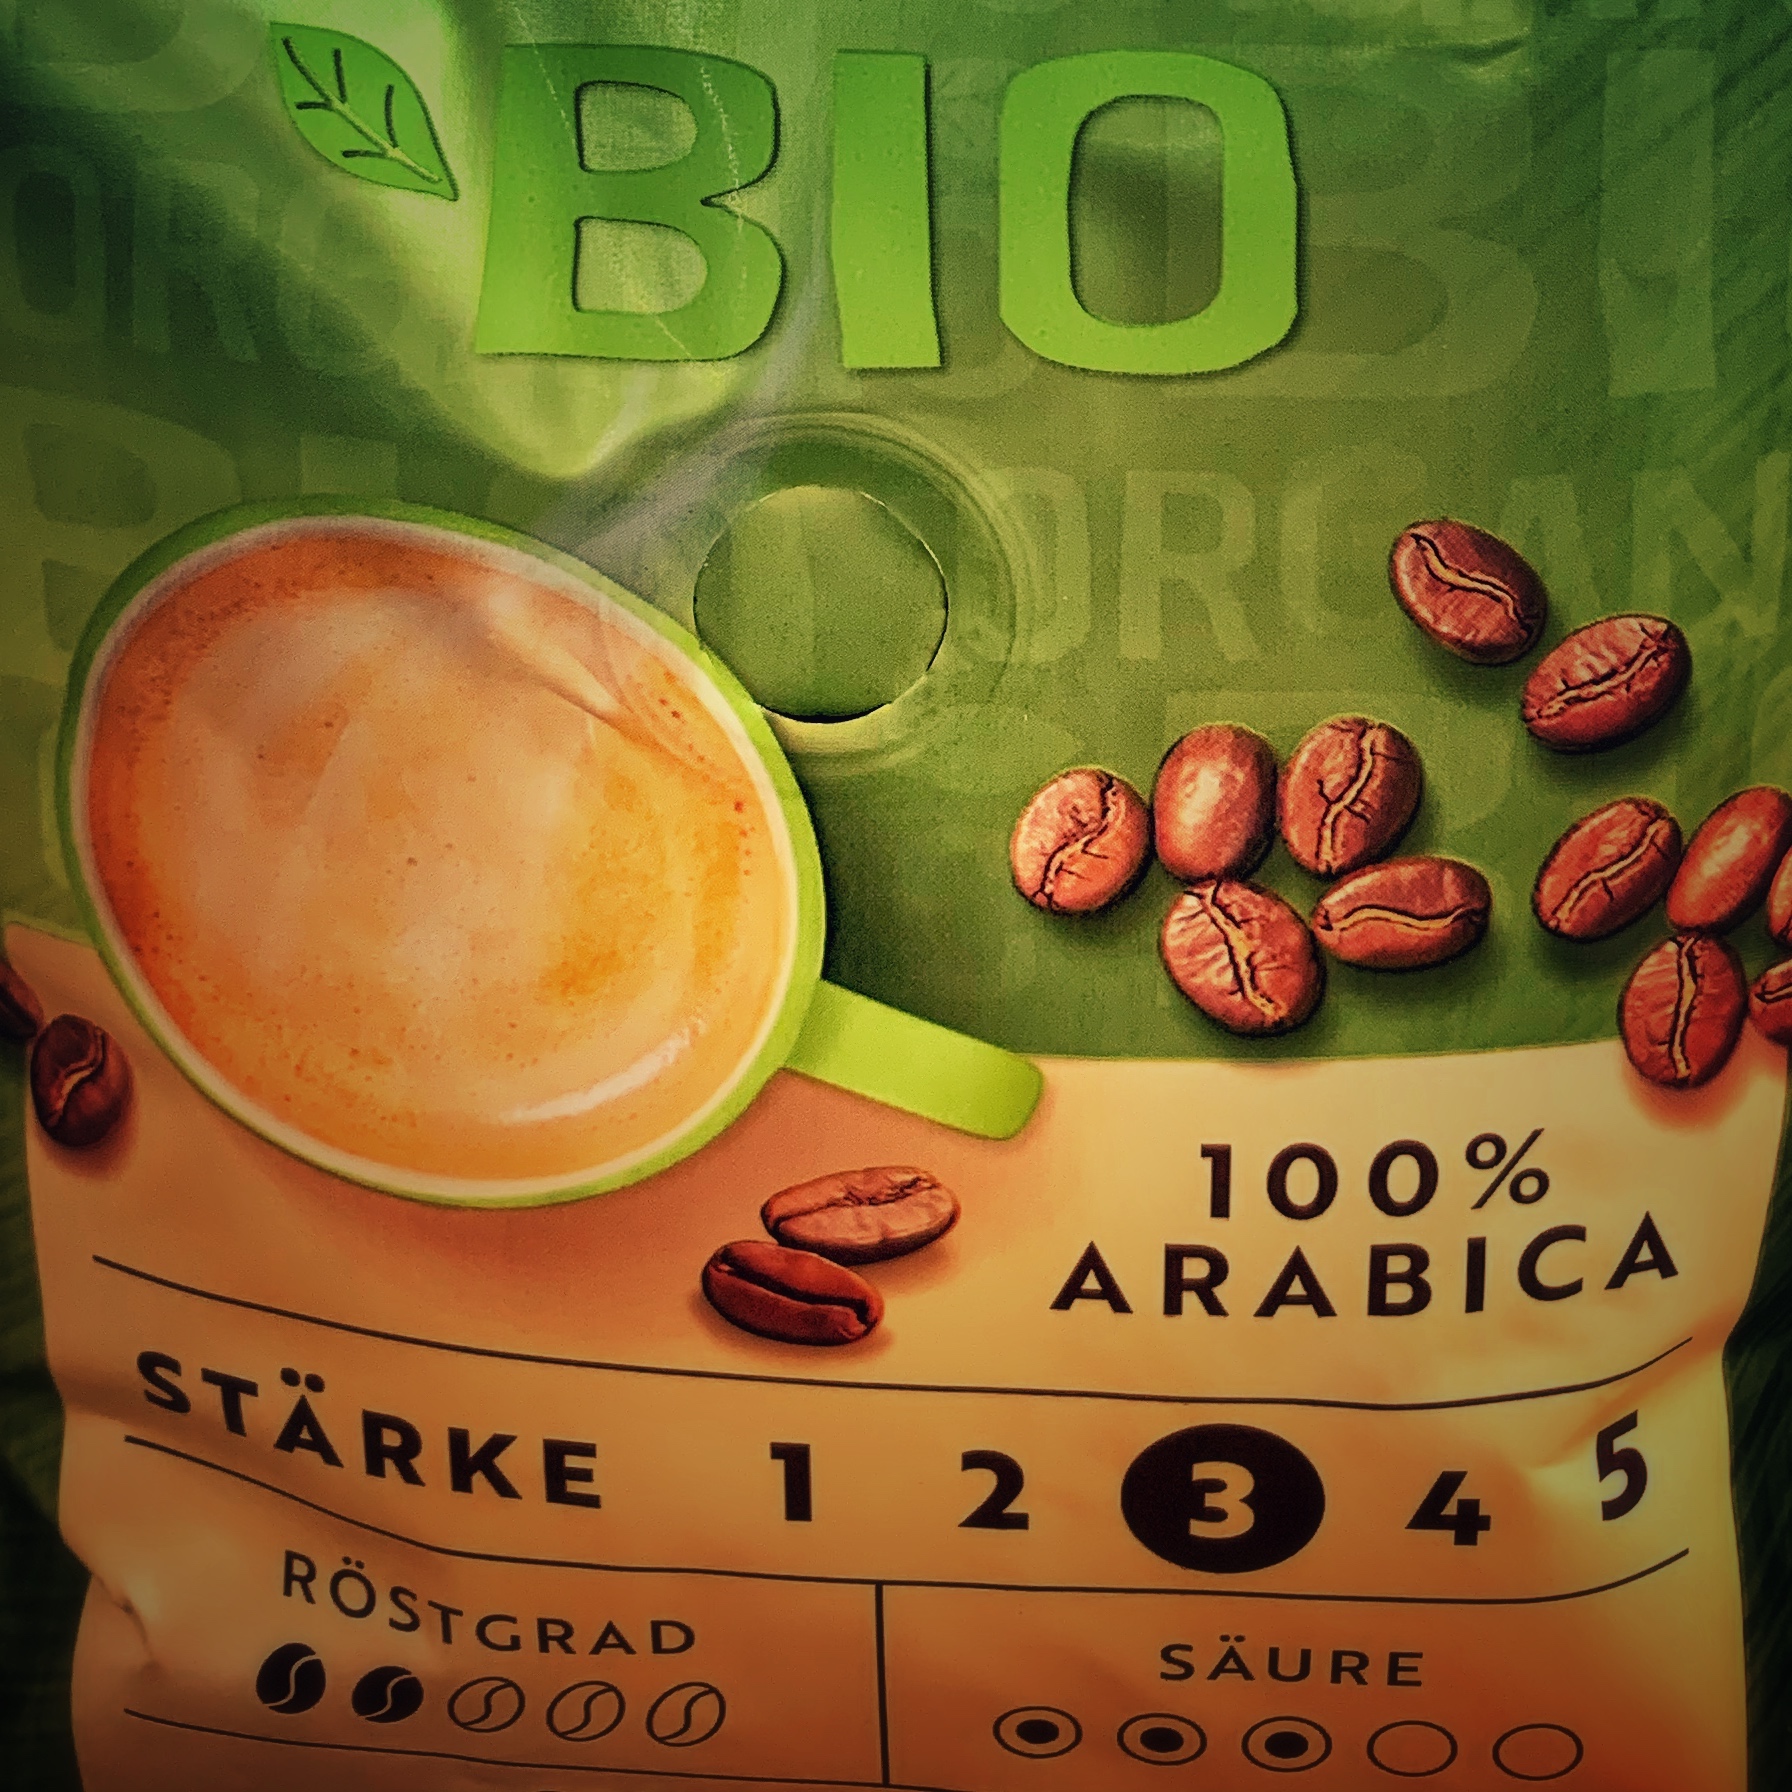 Eine grün braune Kaffeepackung mit der typischen Stärkeangabe in Nahaufnahme. Es steht geschrieben: 100% Arabica, der Röstgrad 2, die Säure 3 und die Stärke 3. Aber gibt es starke Kaffeebohnen?